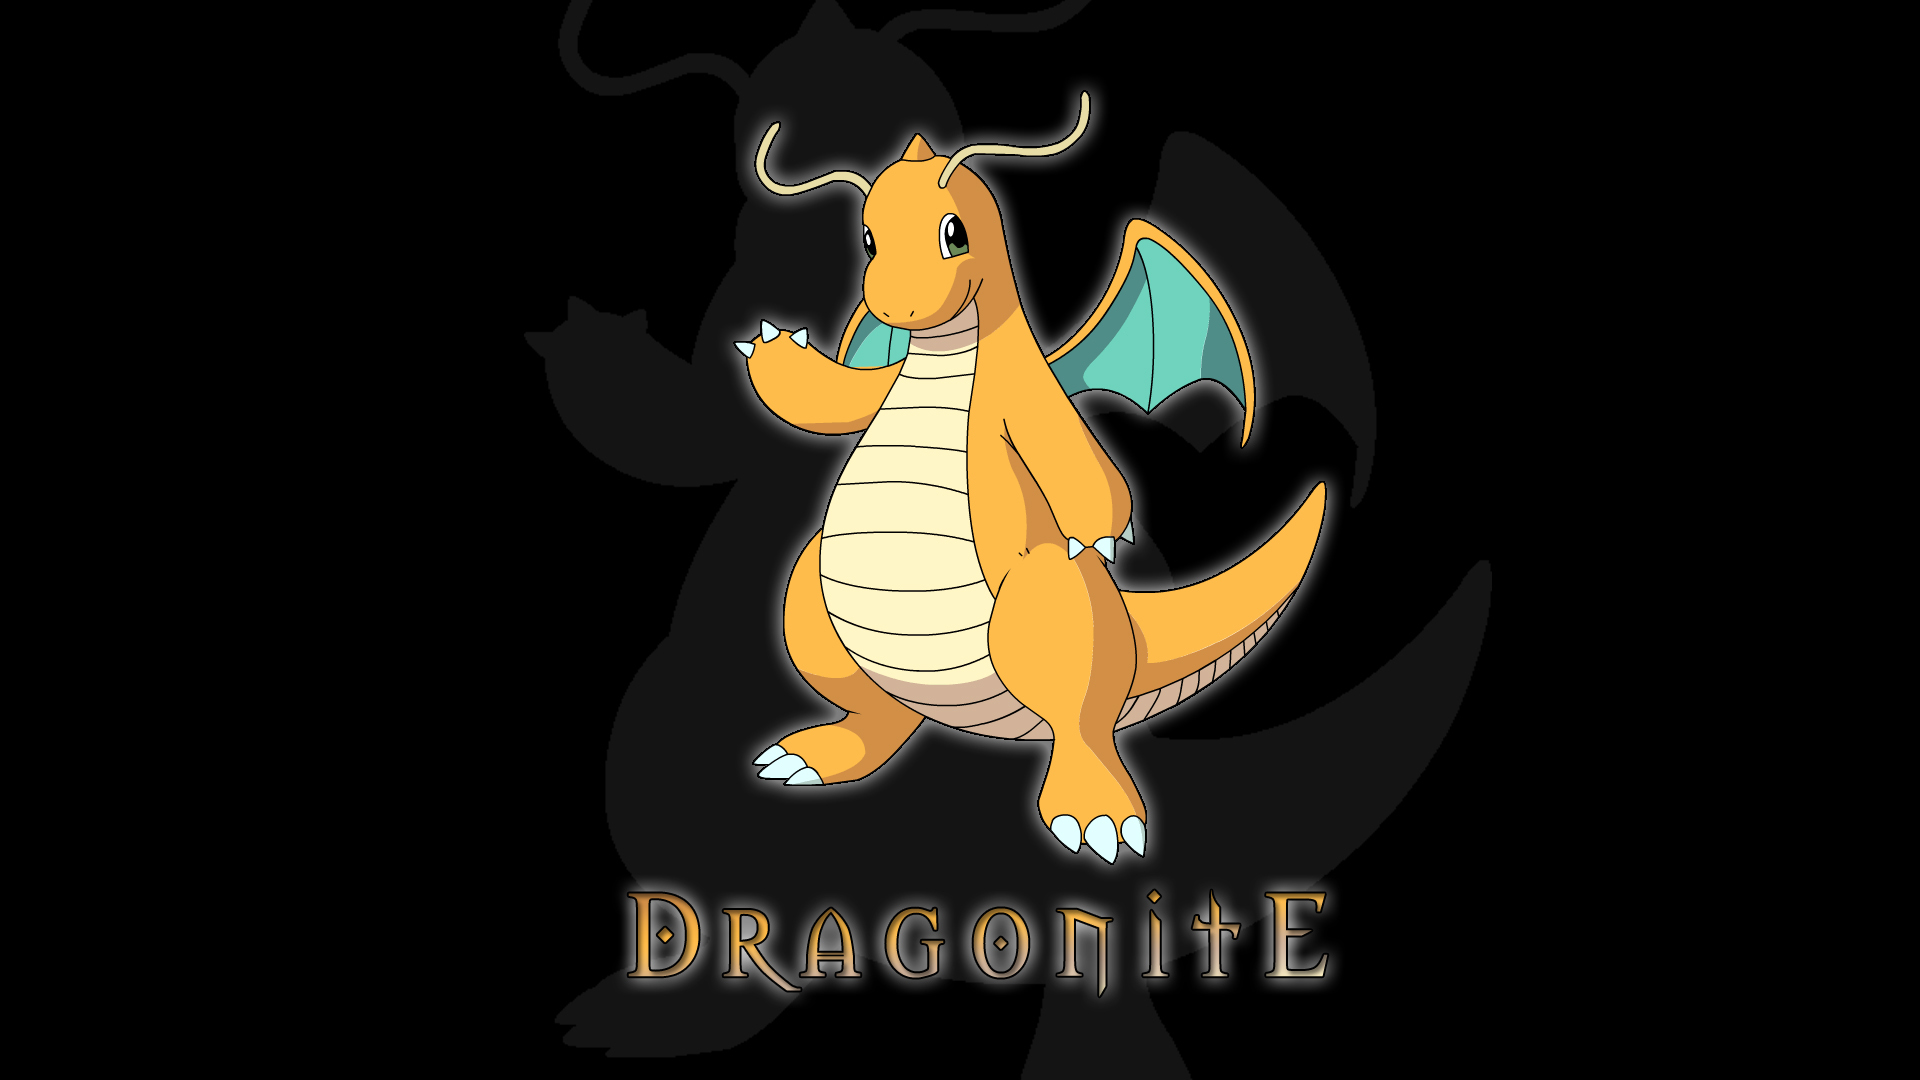 Dragonite (Pokémon) Wallpaper